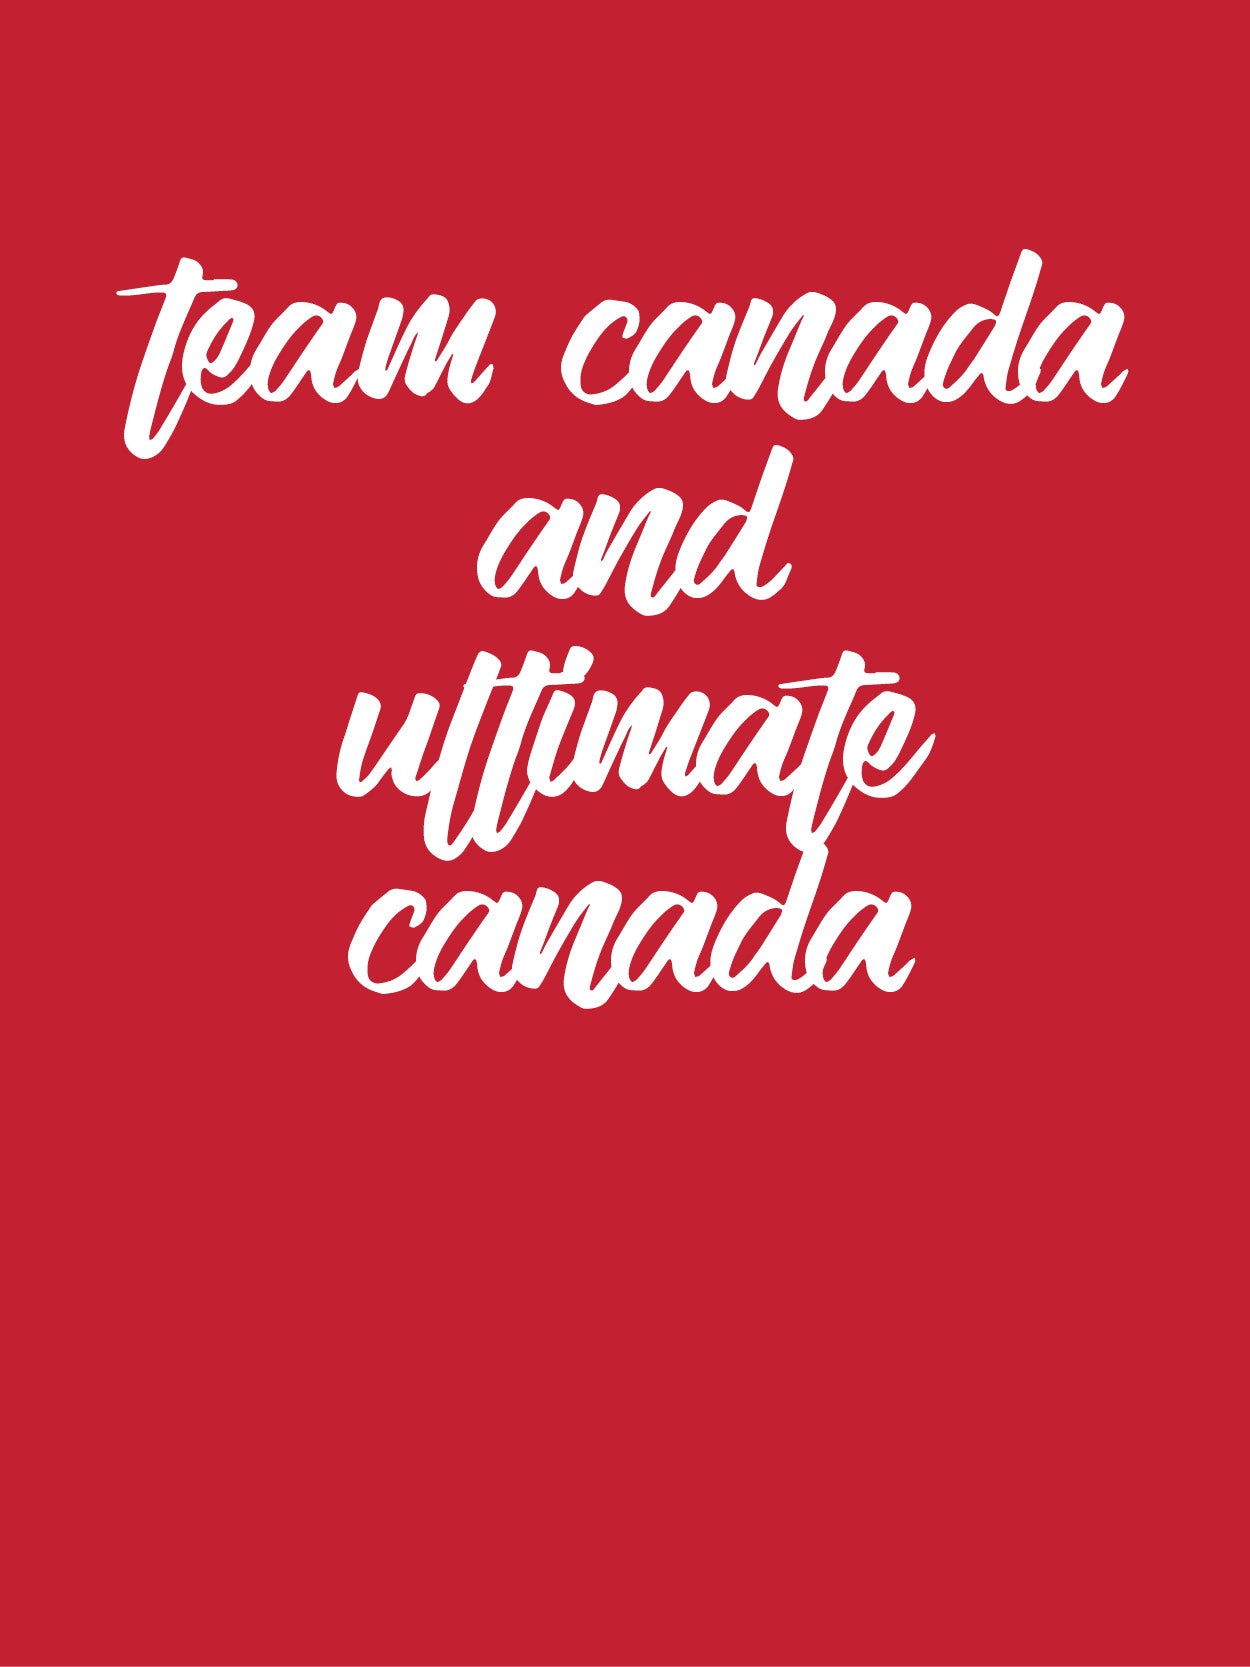 Easy Uniform Guidelines: Ultimate Canada